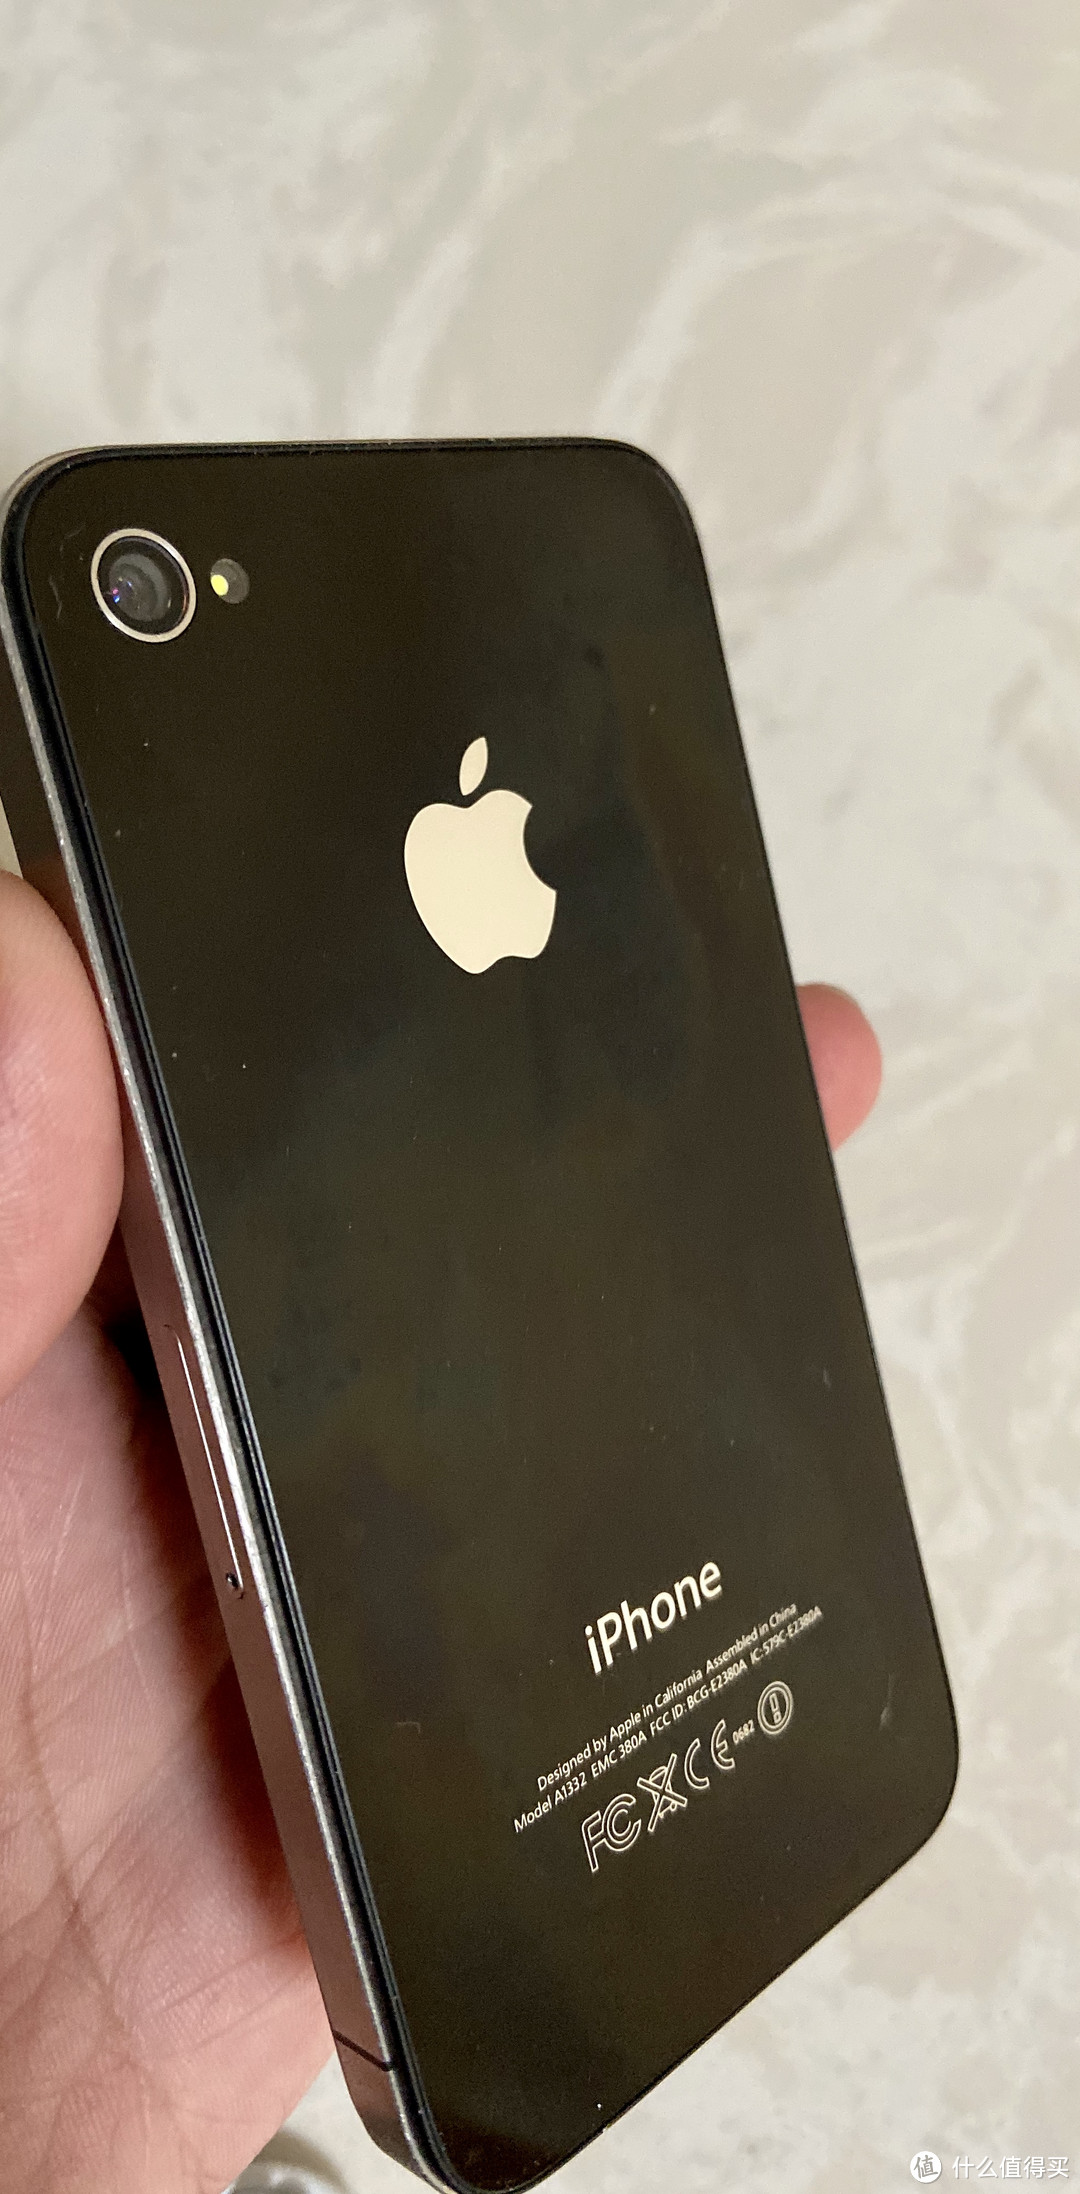 2019年双十一,花35元捡一台iPhone4还能做什么?